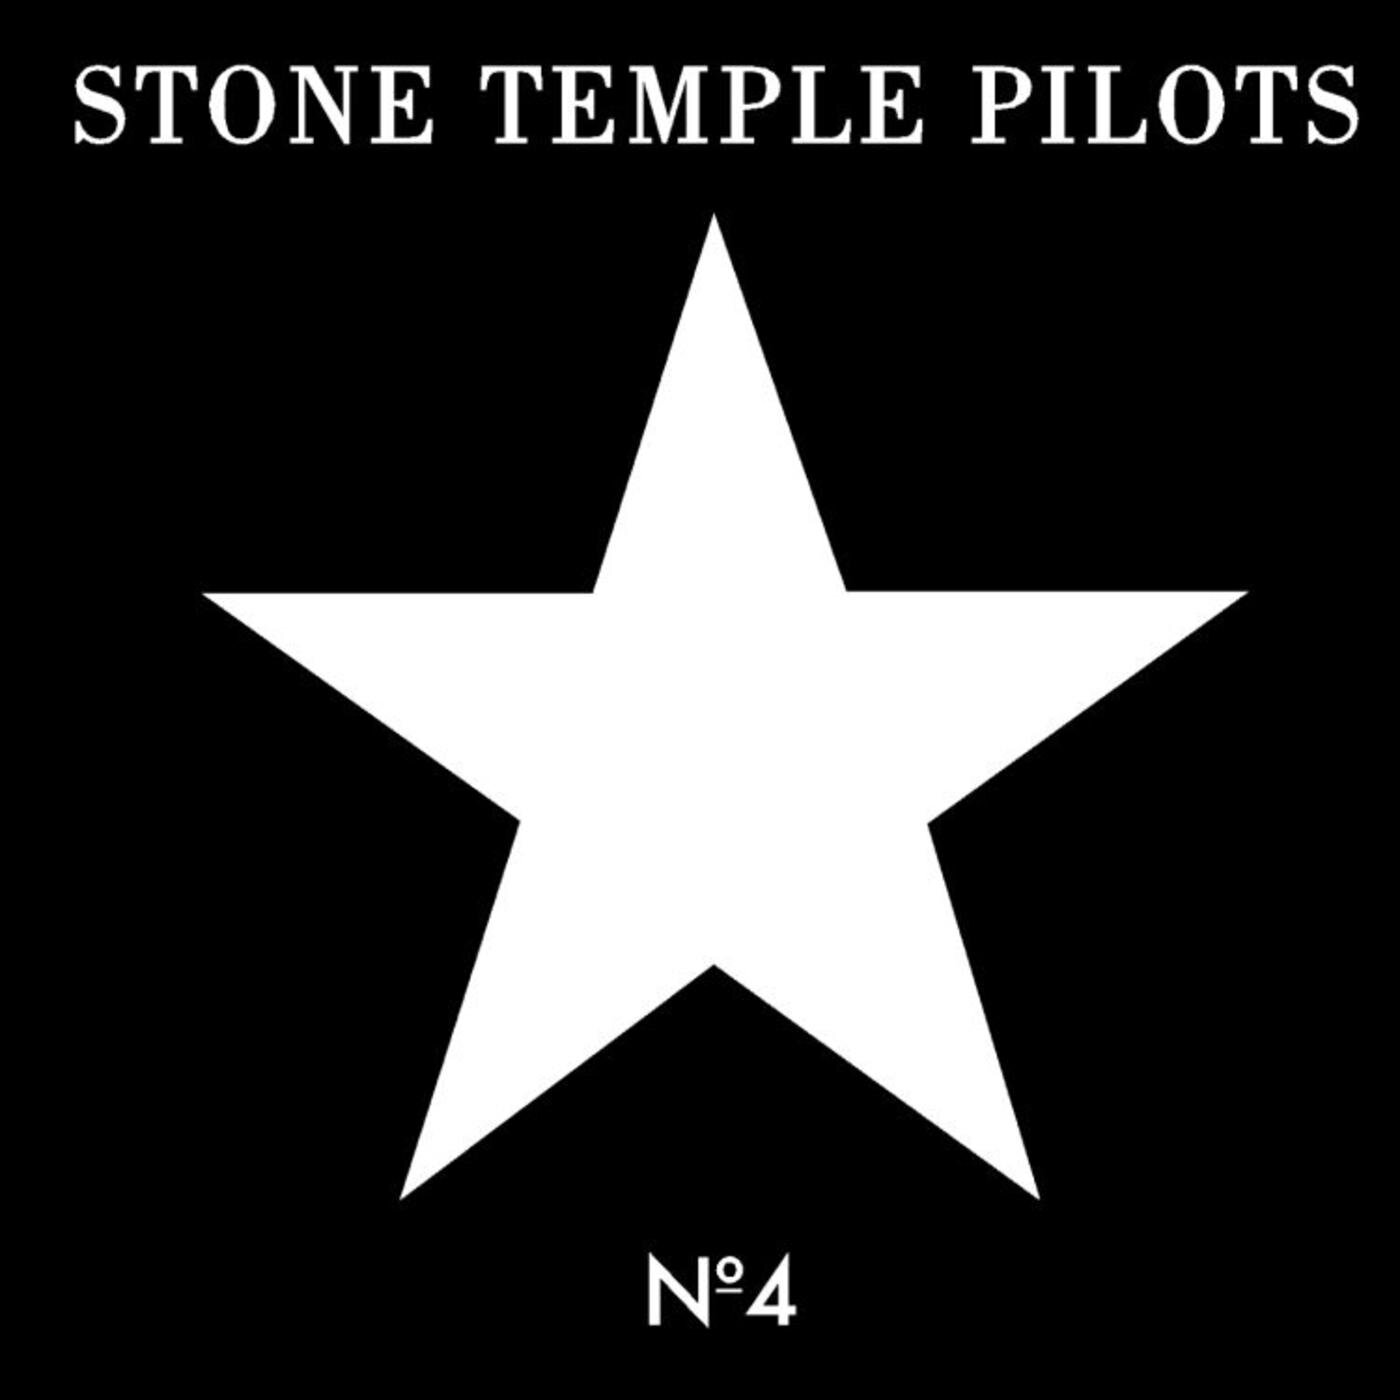 Stone Temple Pilots - No. 4 (My Y2K Guitar Rig)